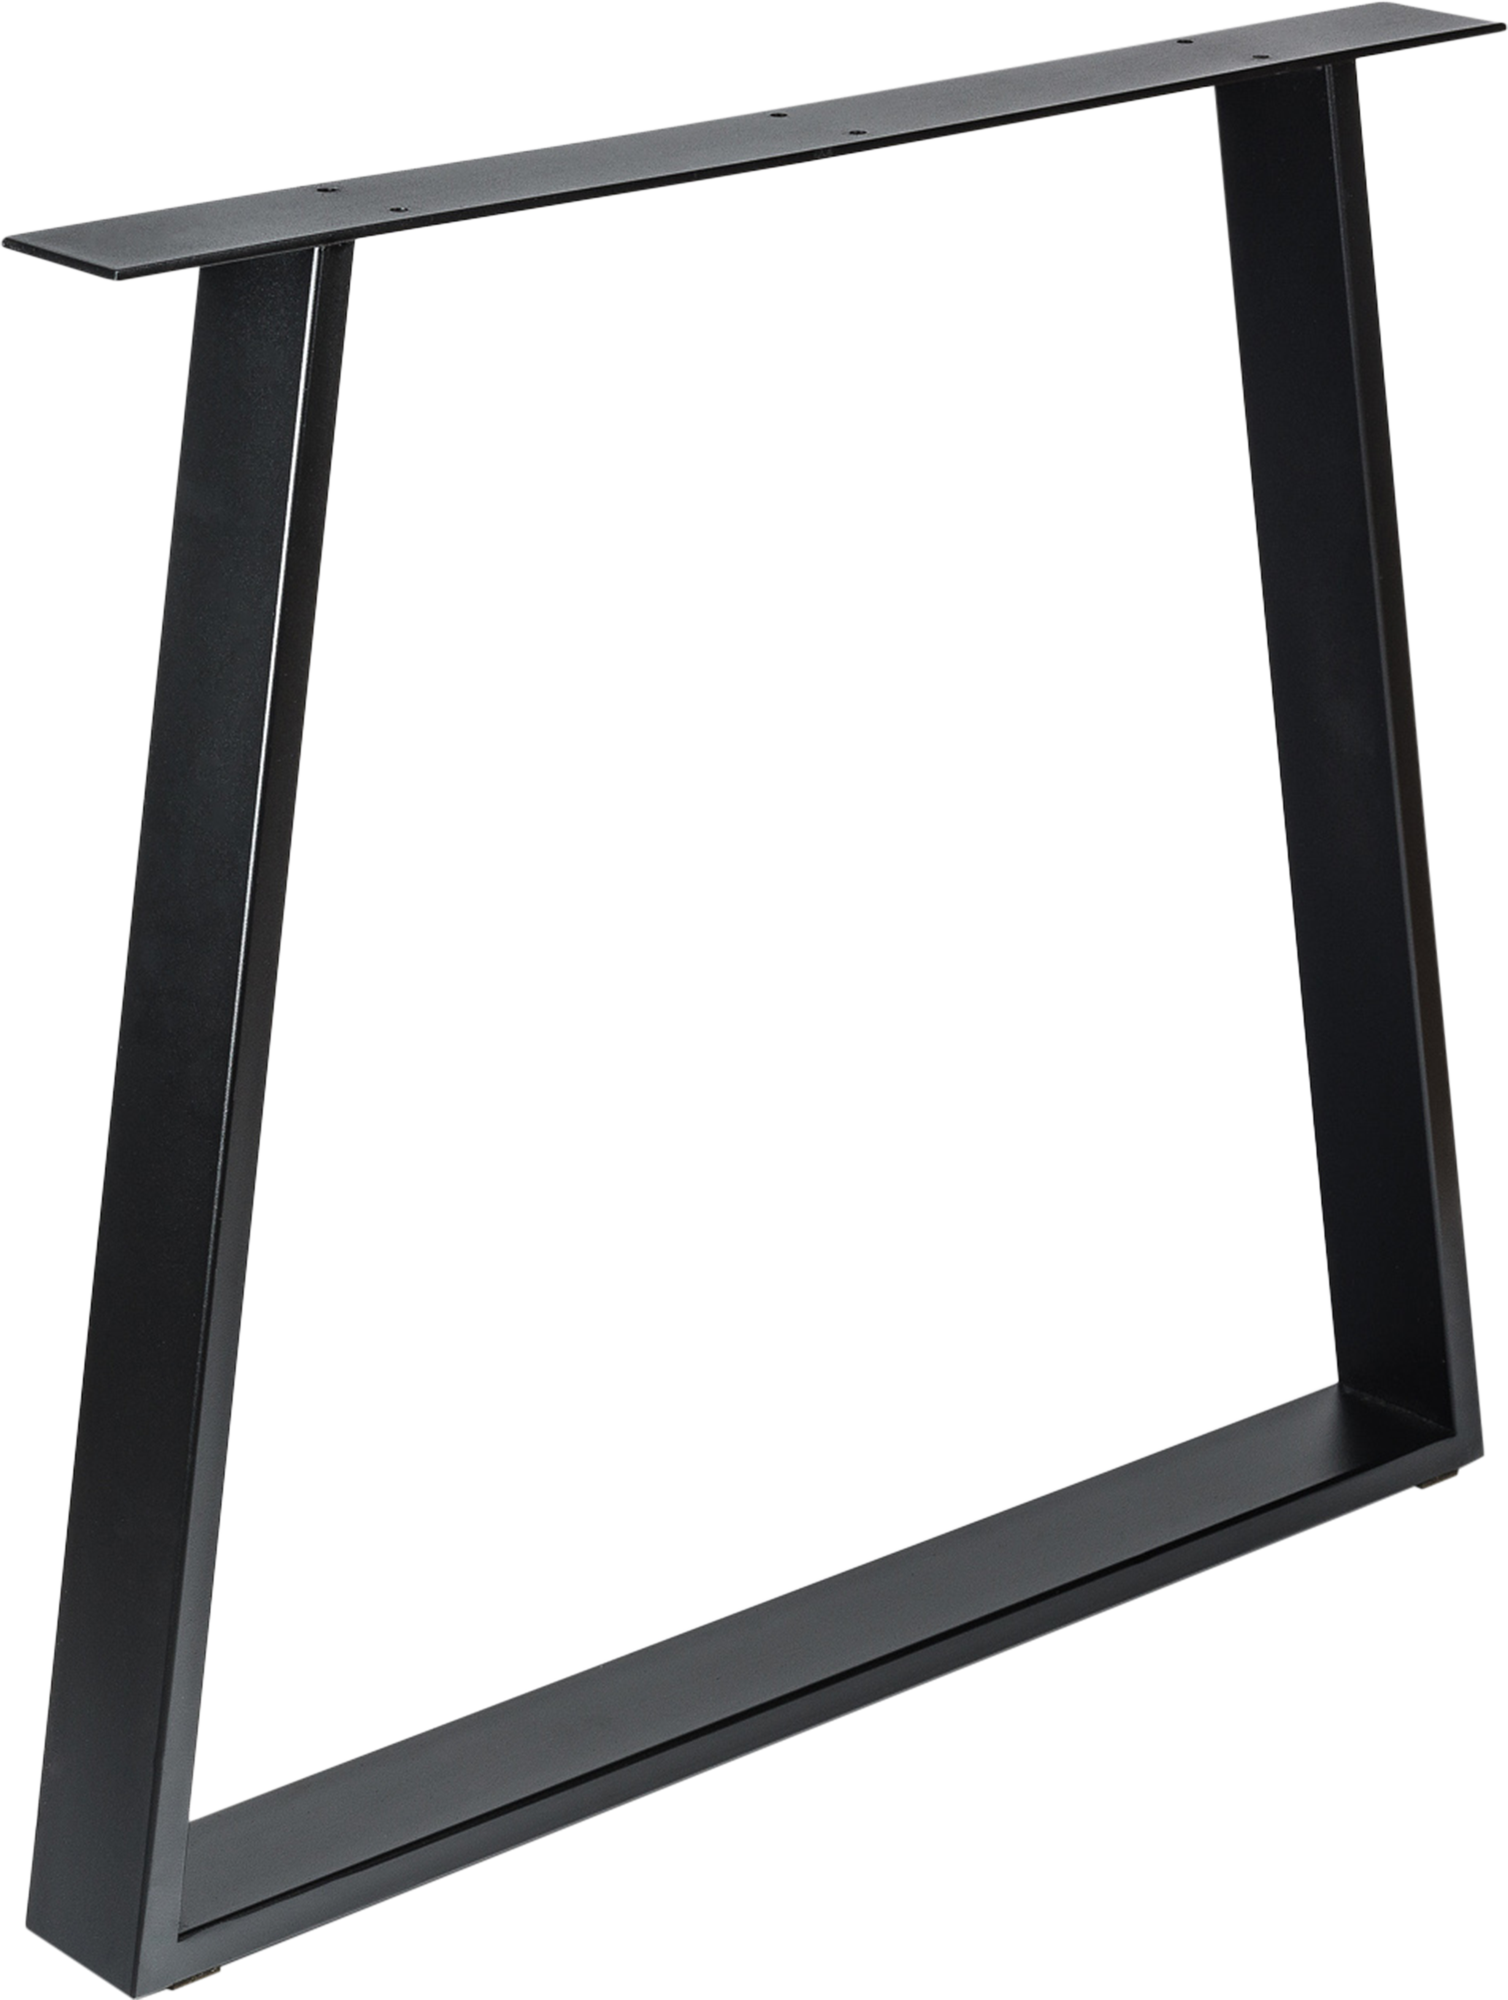 Pata fija trapecio de acero para mesas y encimeras 78 x 71,2 cm color negro mate